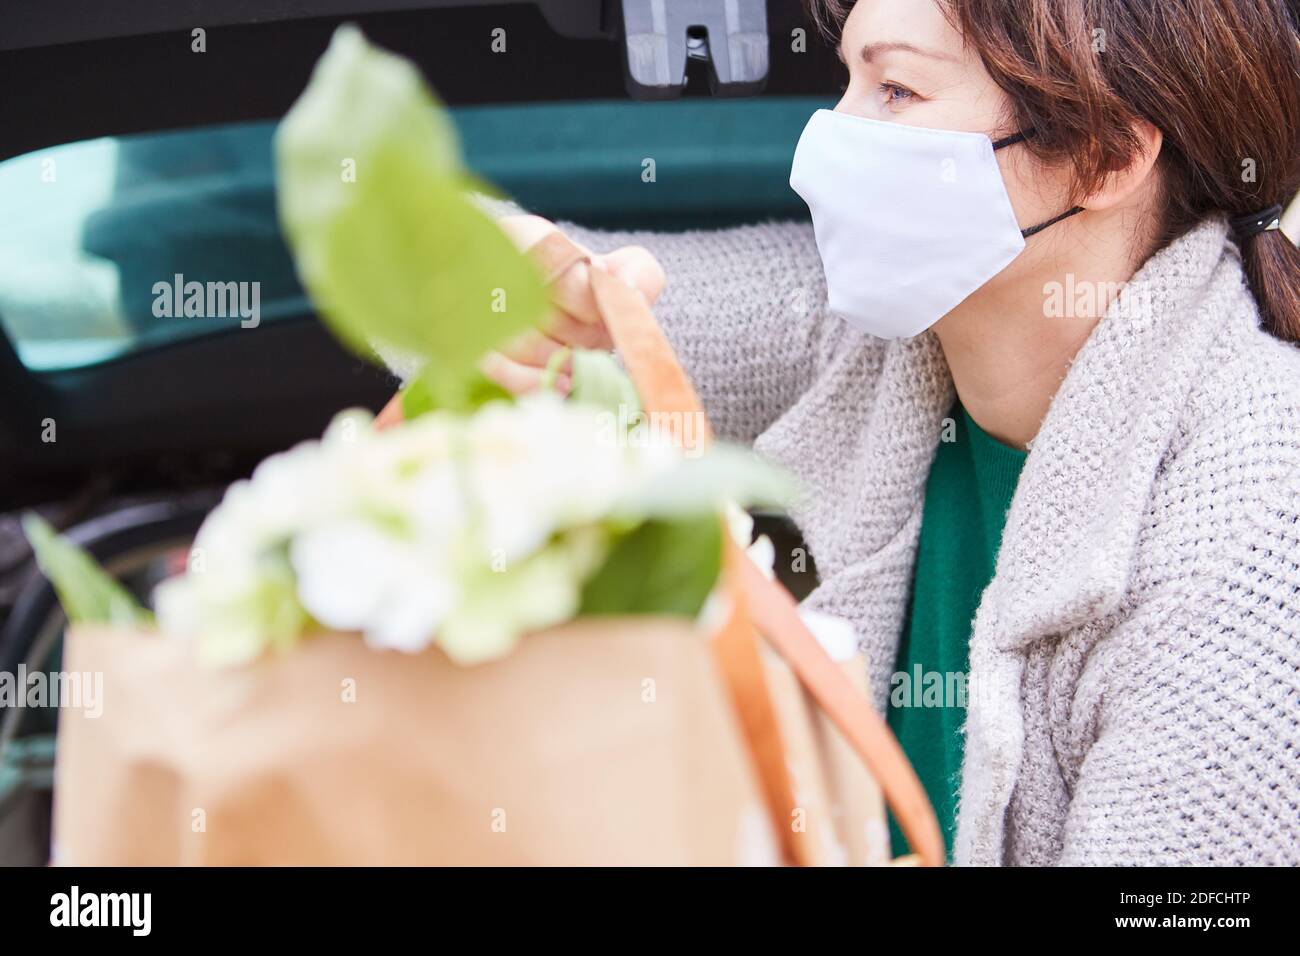 Frau mit OP-Maske trägt Tasche mit Blumen in den Händen Aus dem Kofferraum Stockfoto